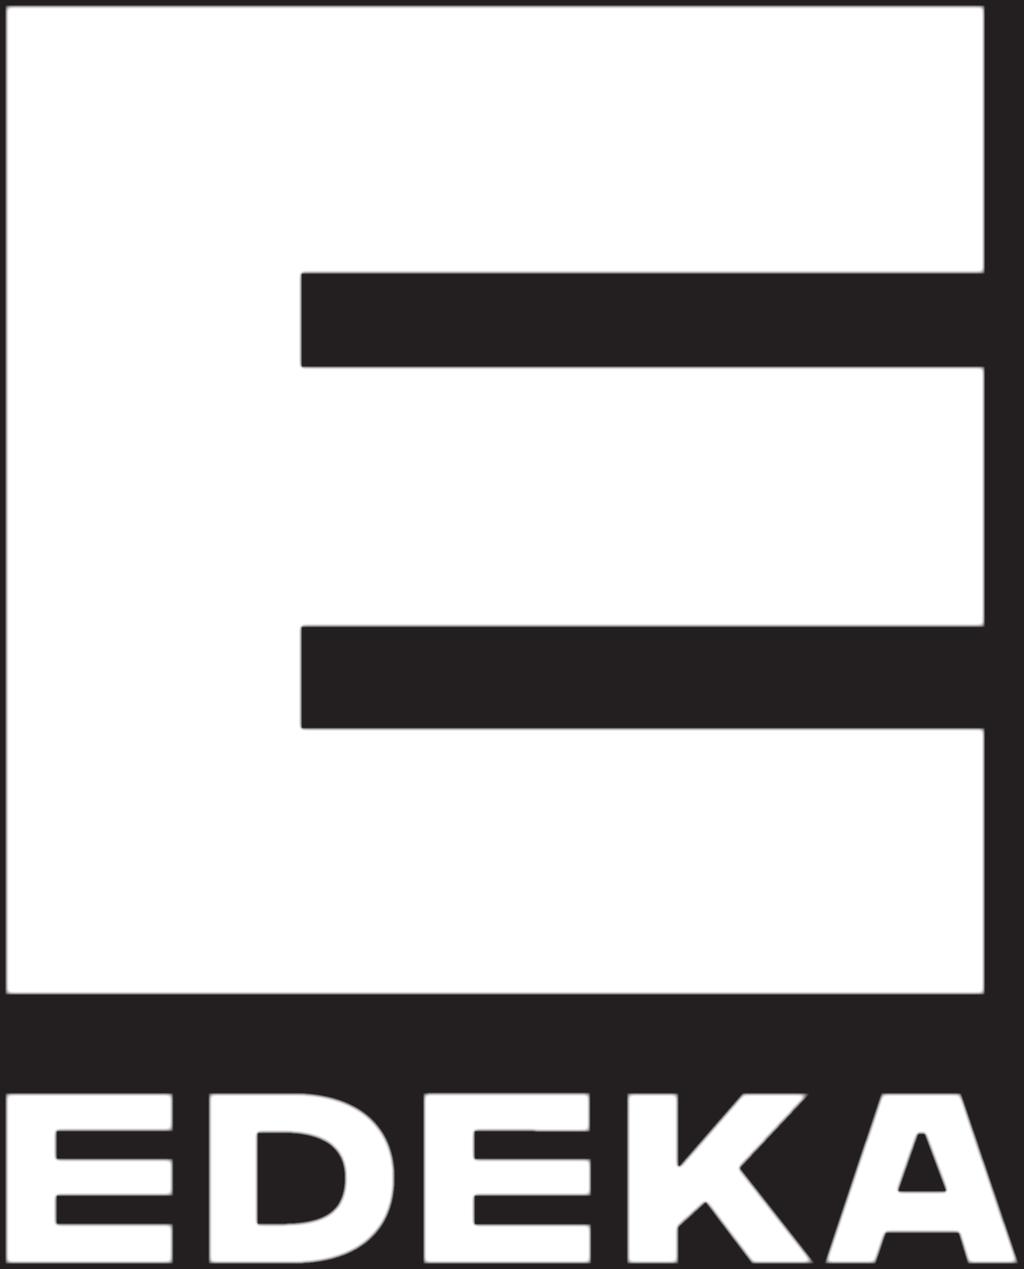 EDEKA Verband kaufmännischer Genossenschaften e.v.